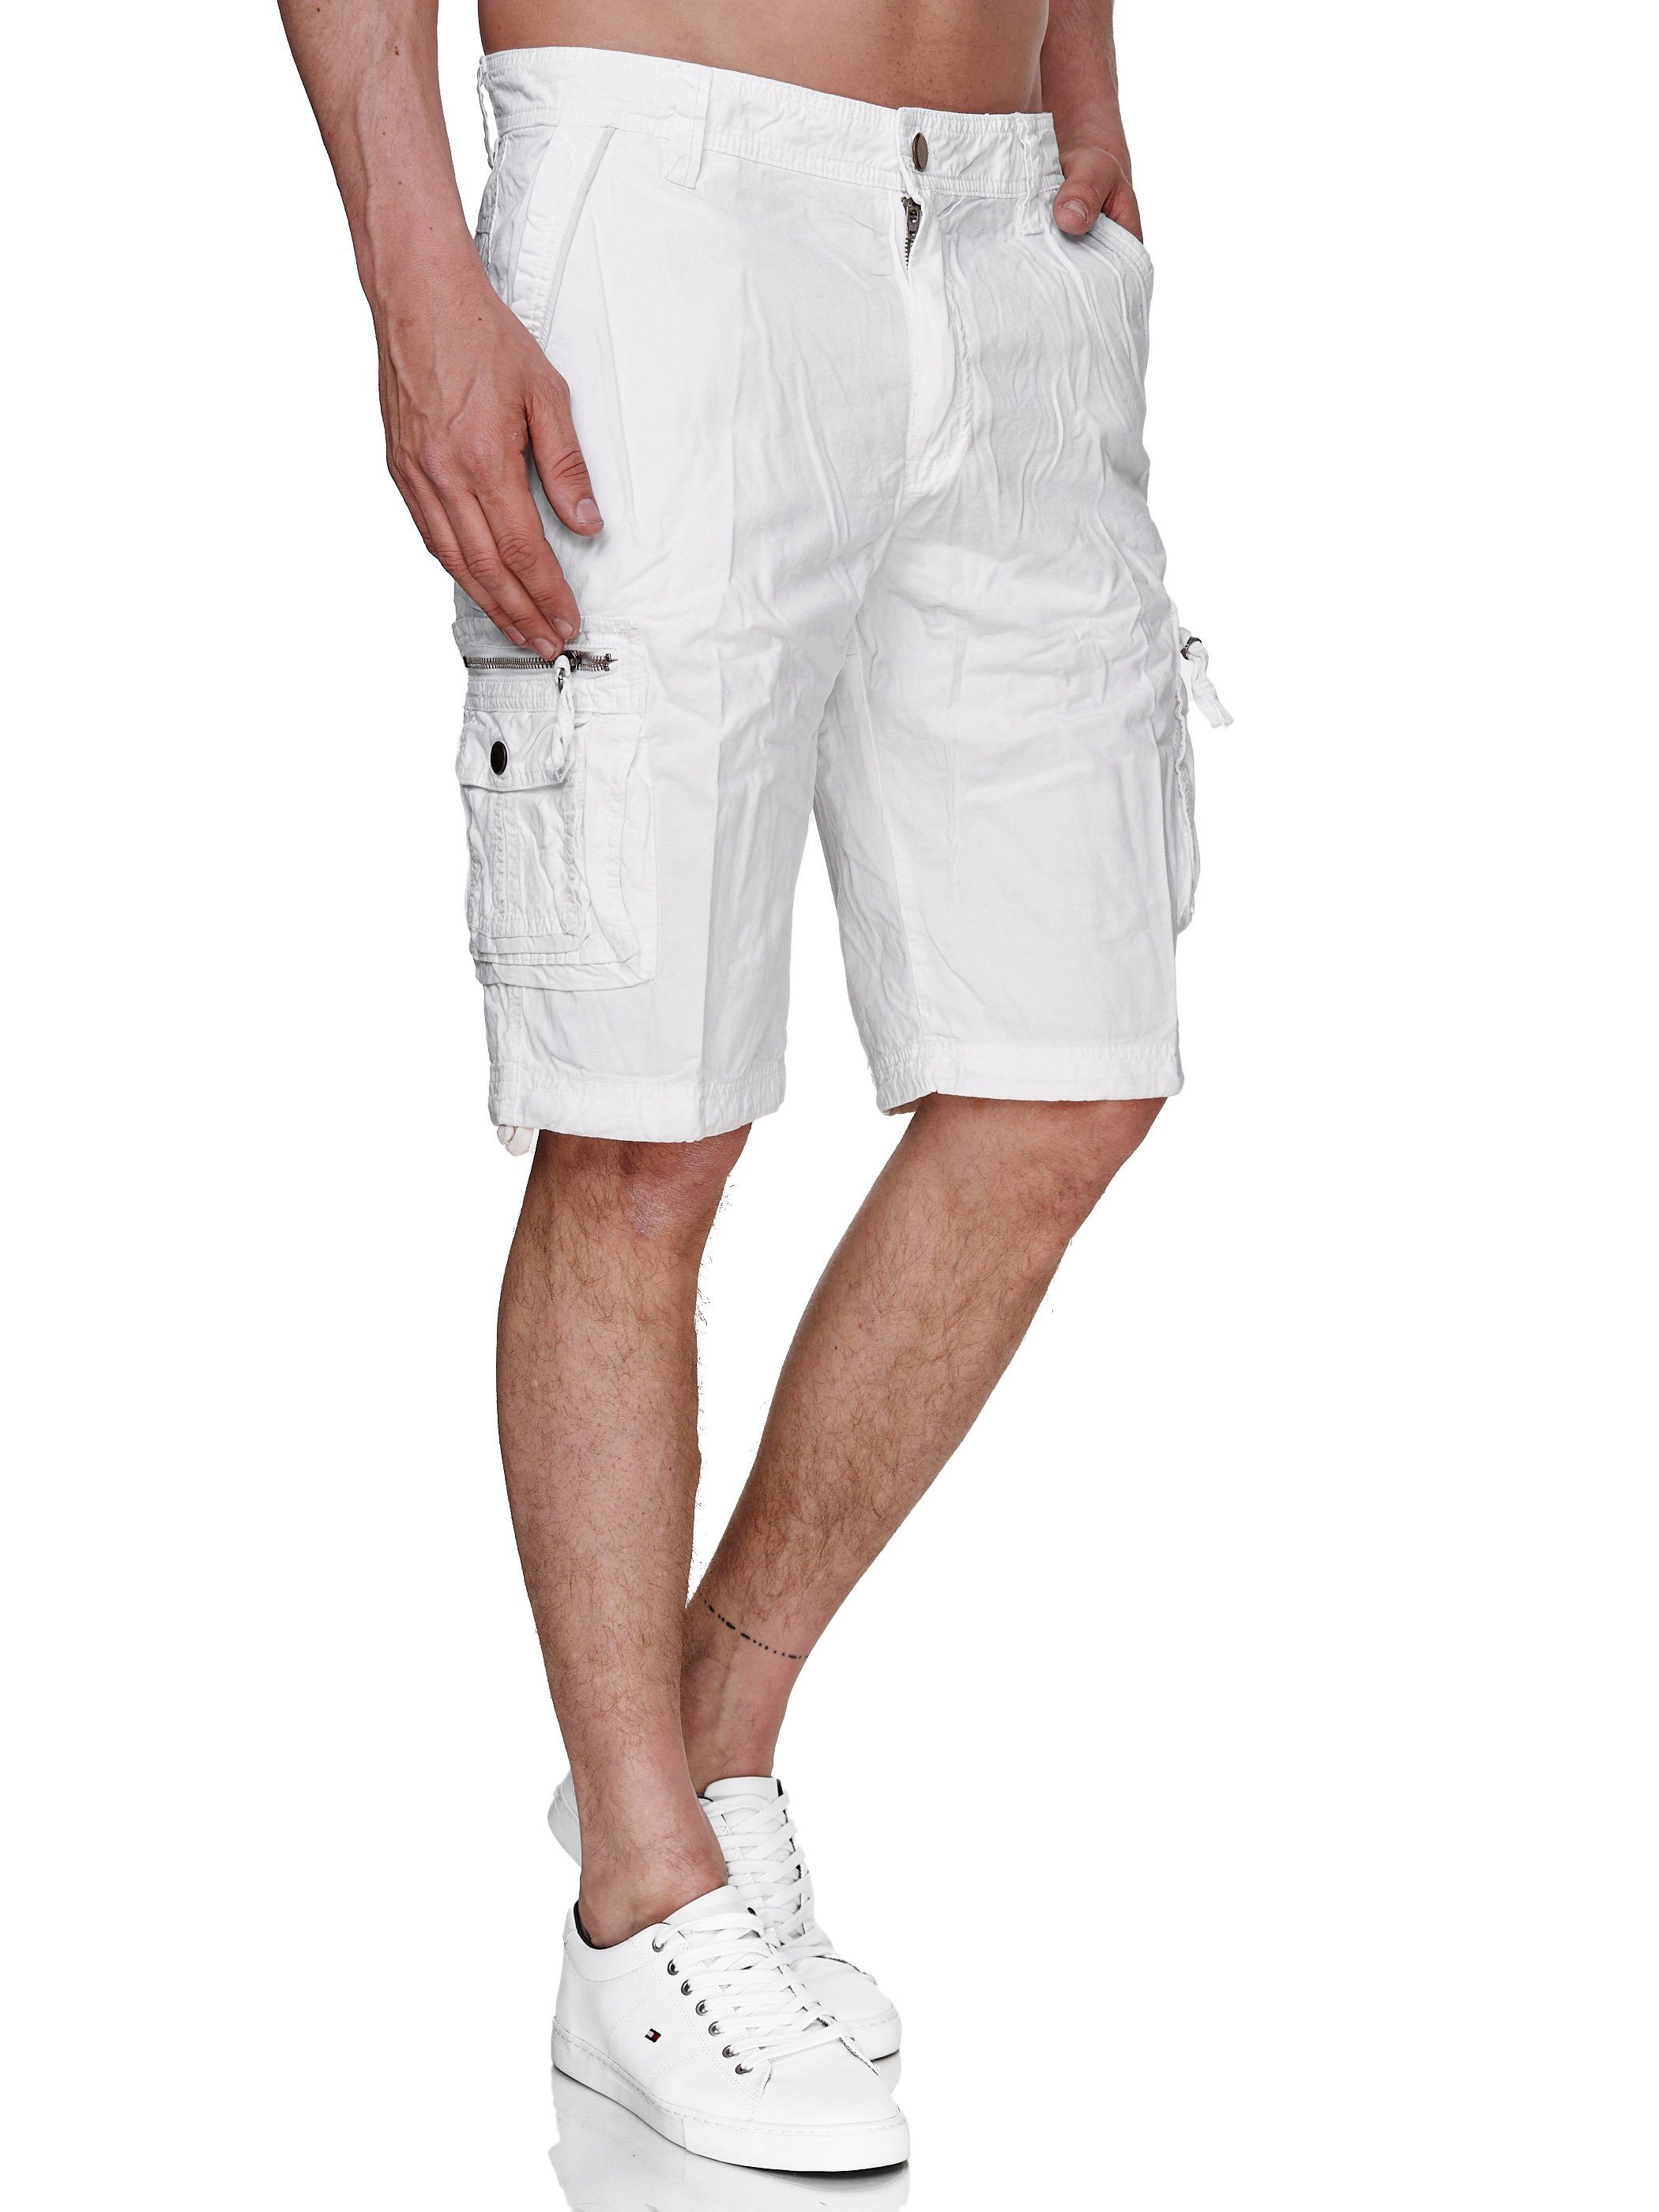 Rayshyne Cargoshorts Shorts Gürtel) Taschen (Bermuda Sommer mit Weiß Kurze RSH02 Viele